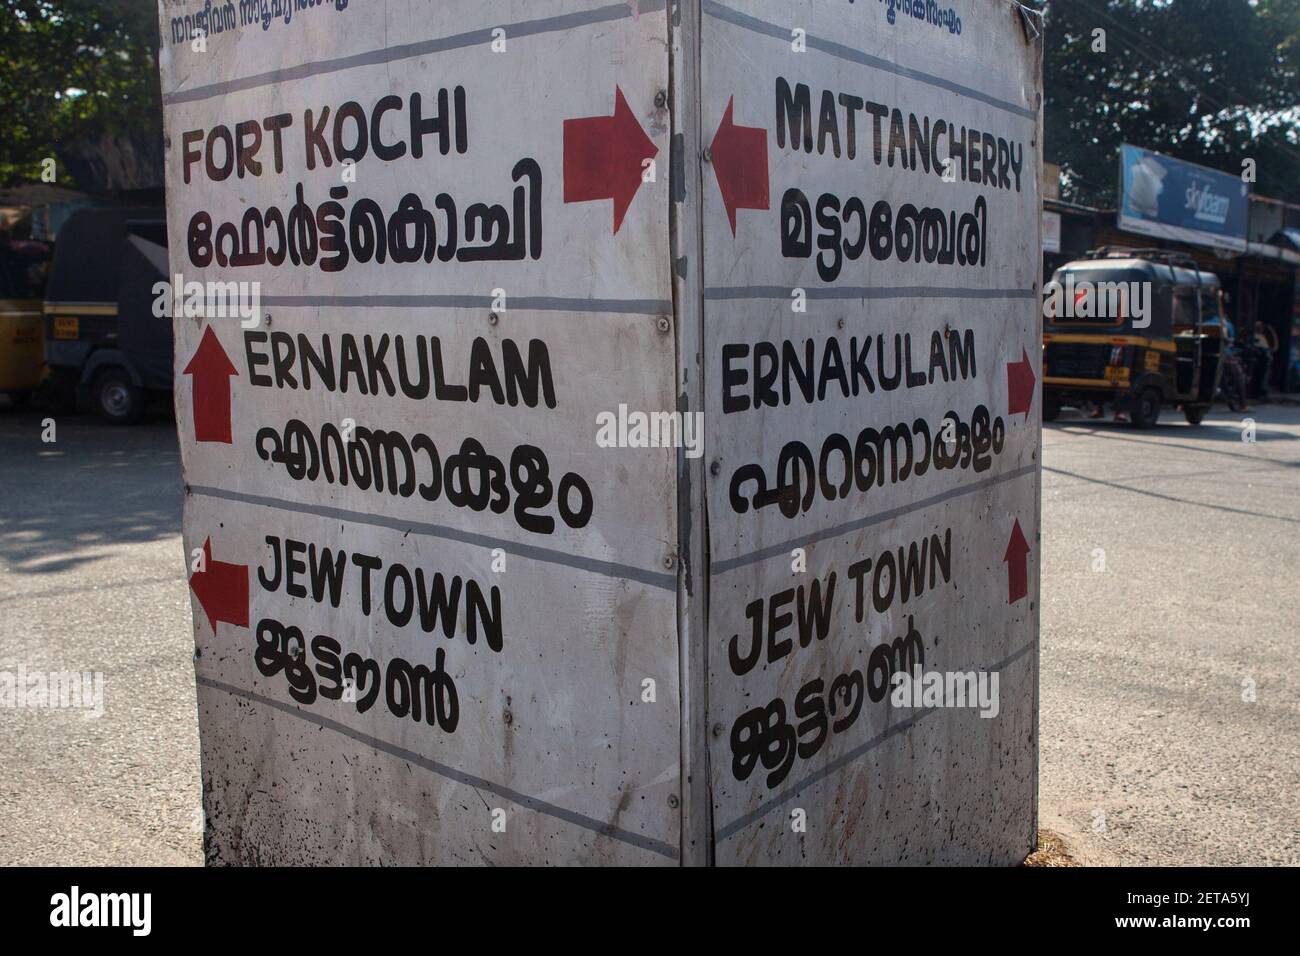 Marquage routier pour fort Kochi (Cochin), Jew Town & Ernakulam à Kerala, Inde (écrit en anglais et malayalam) Banque D'Images